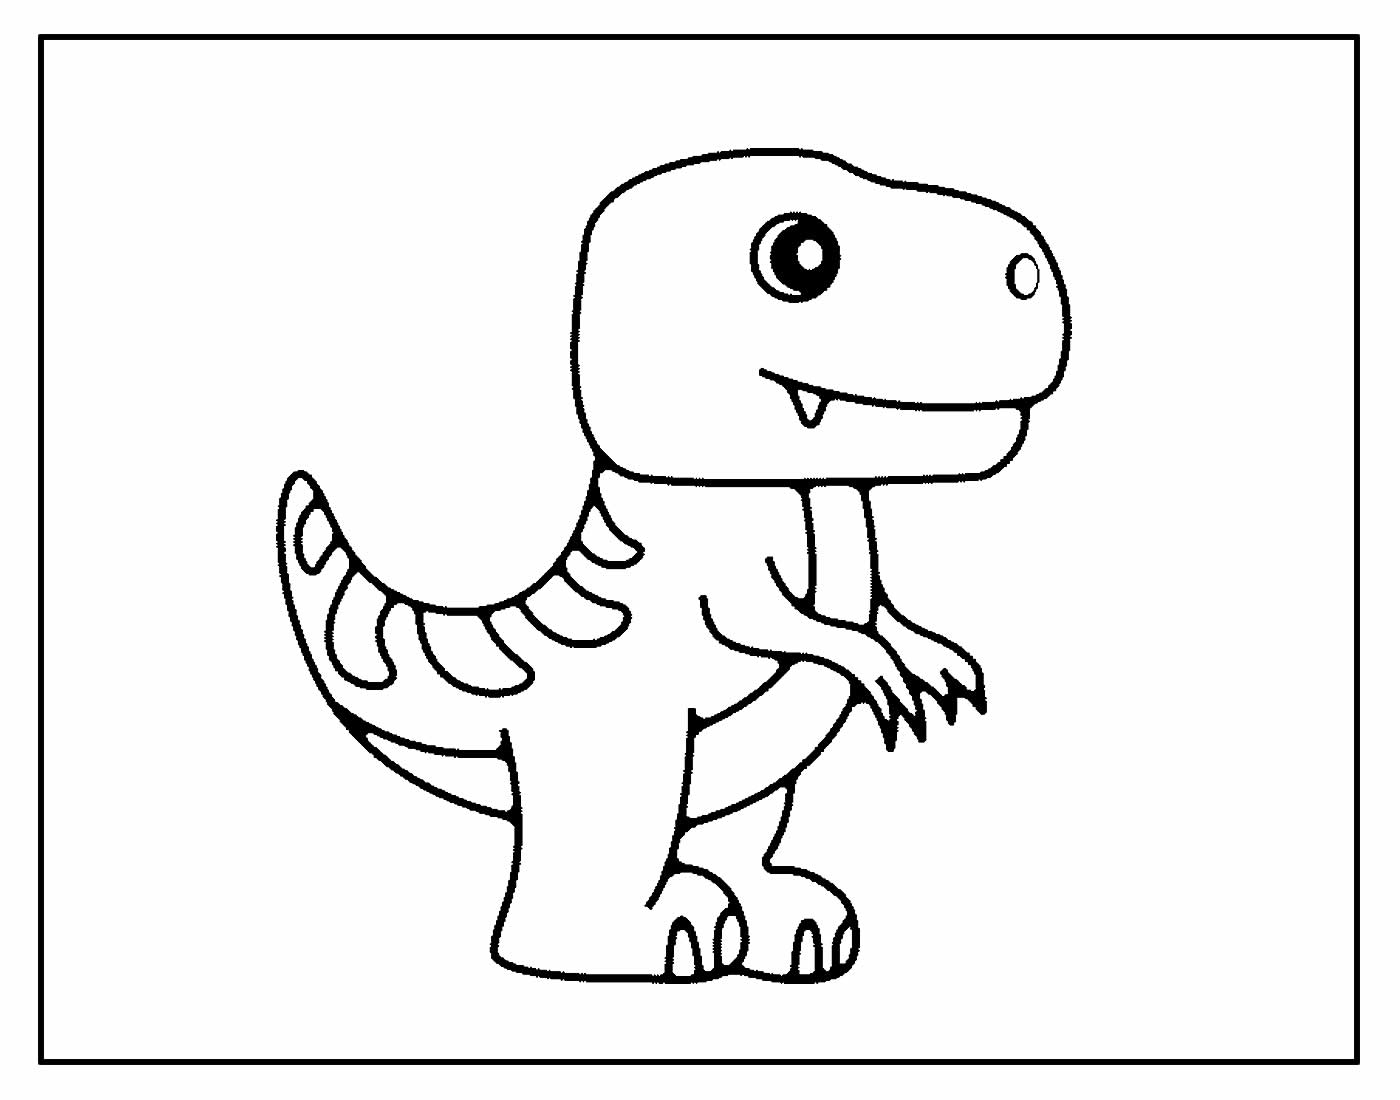 desenho de dinossauro para colorir 17673988 Vetor no Vecteezy